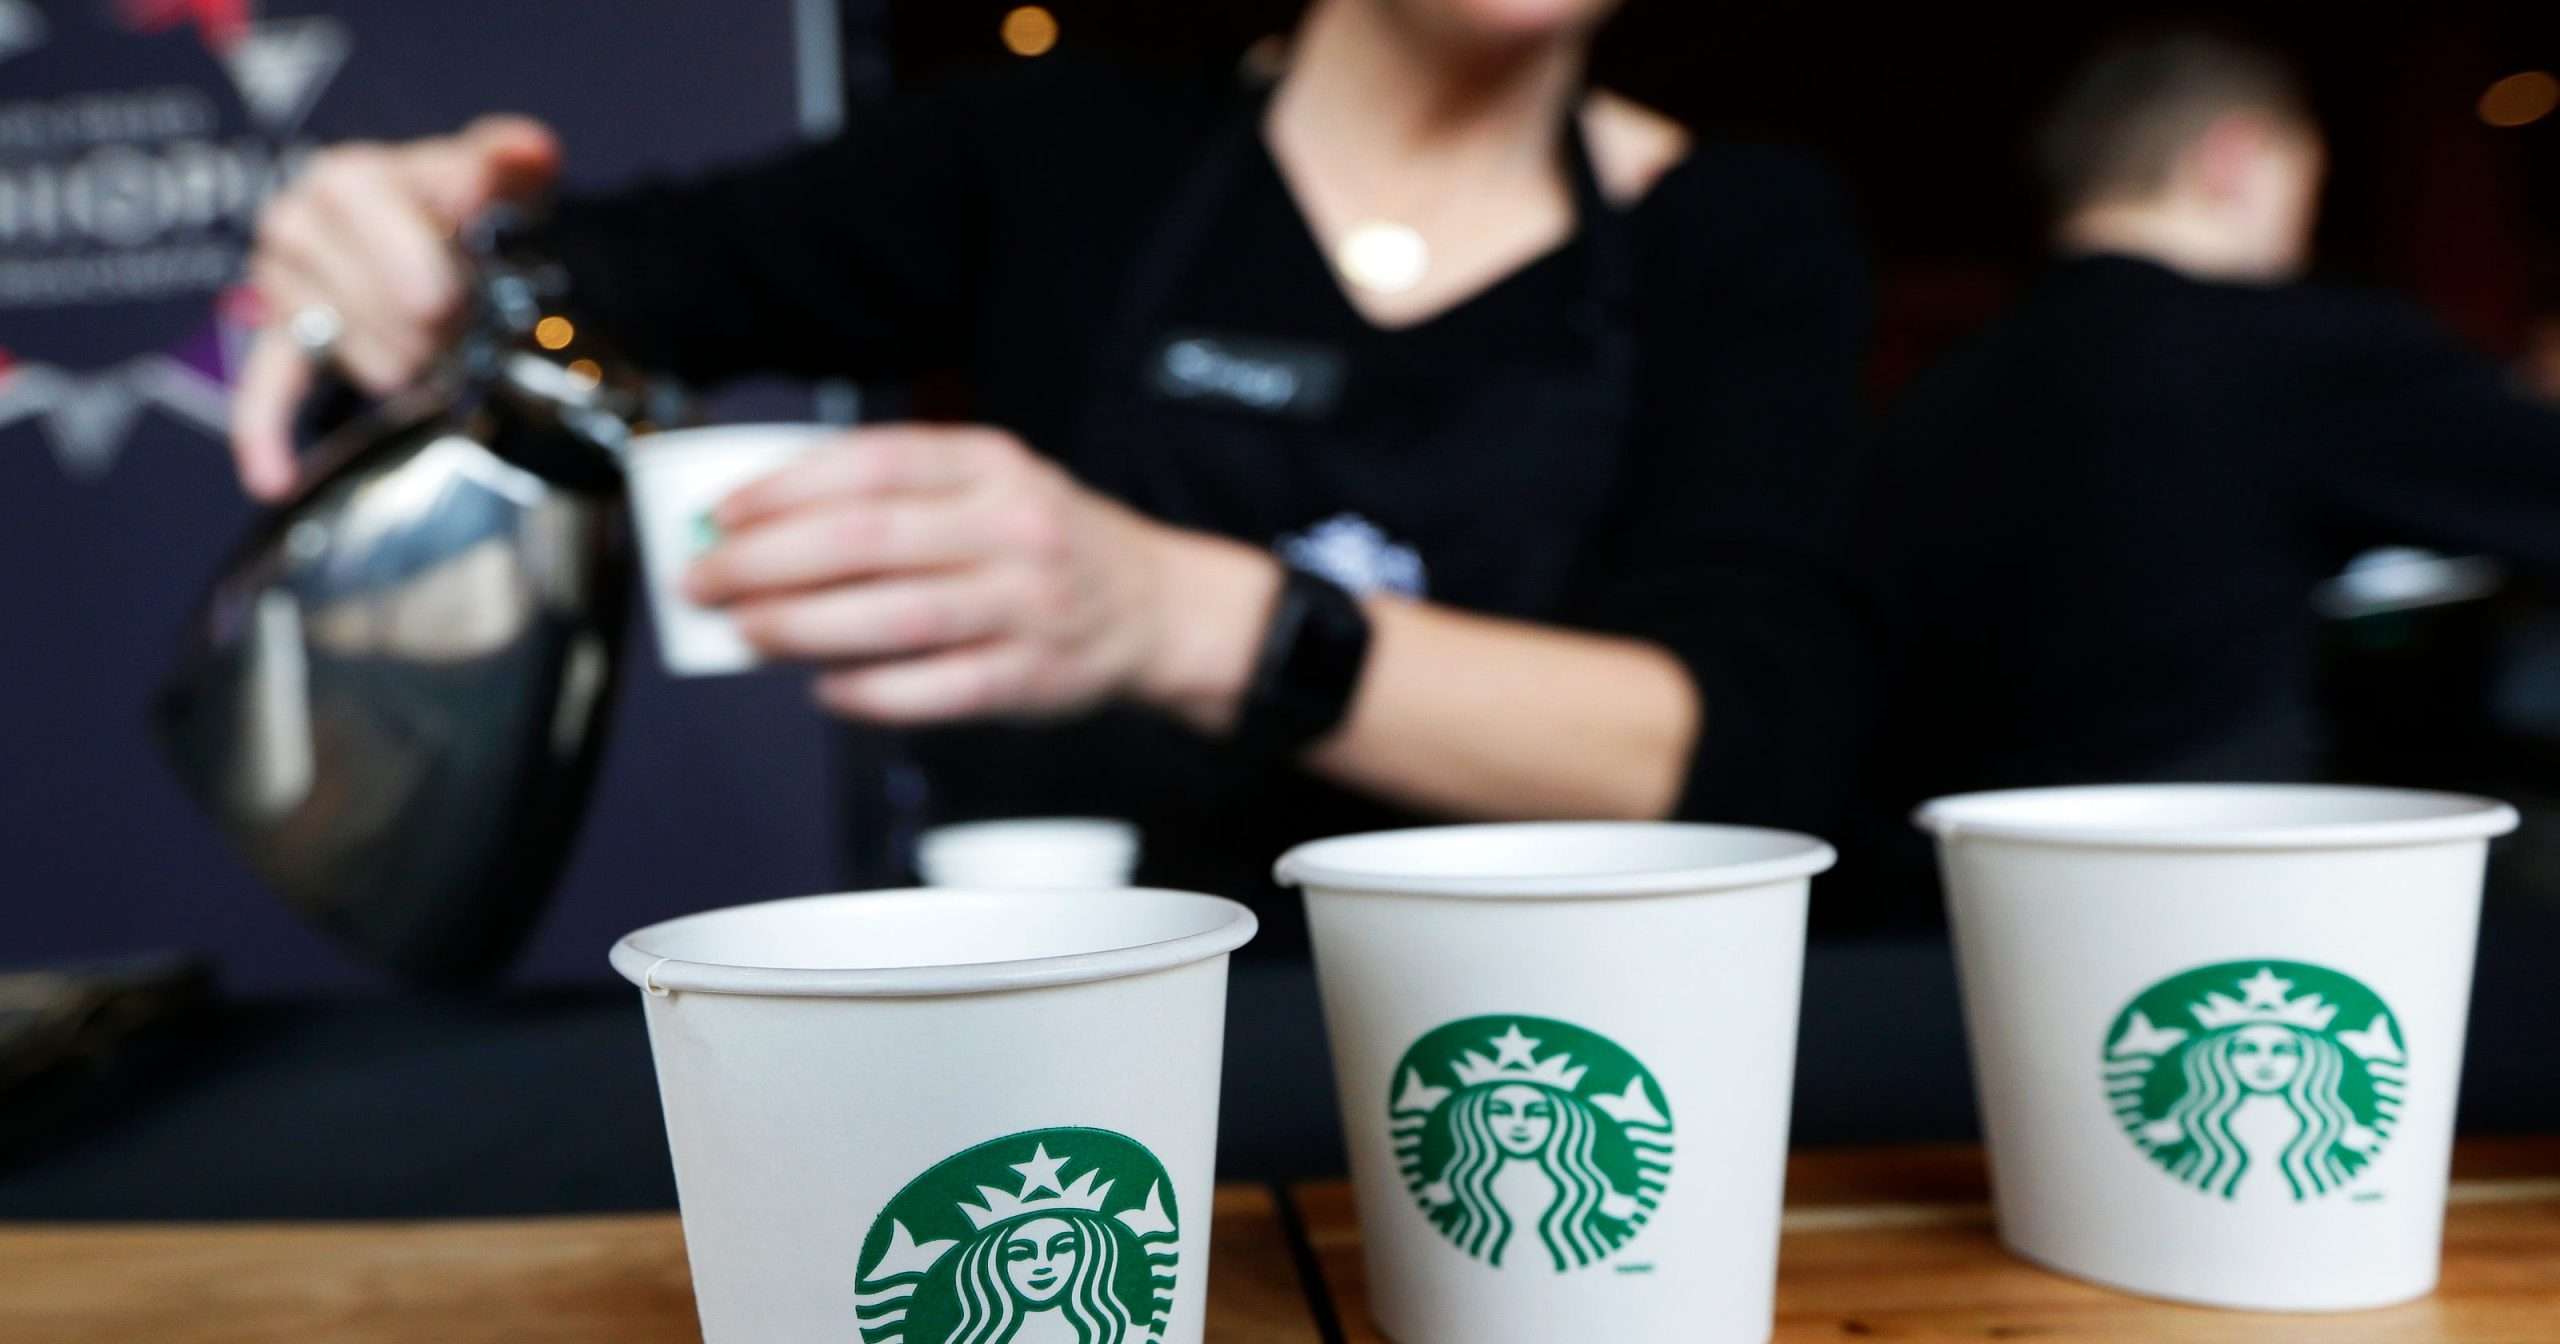 Starbucks tests coffee with beer taste